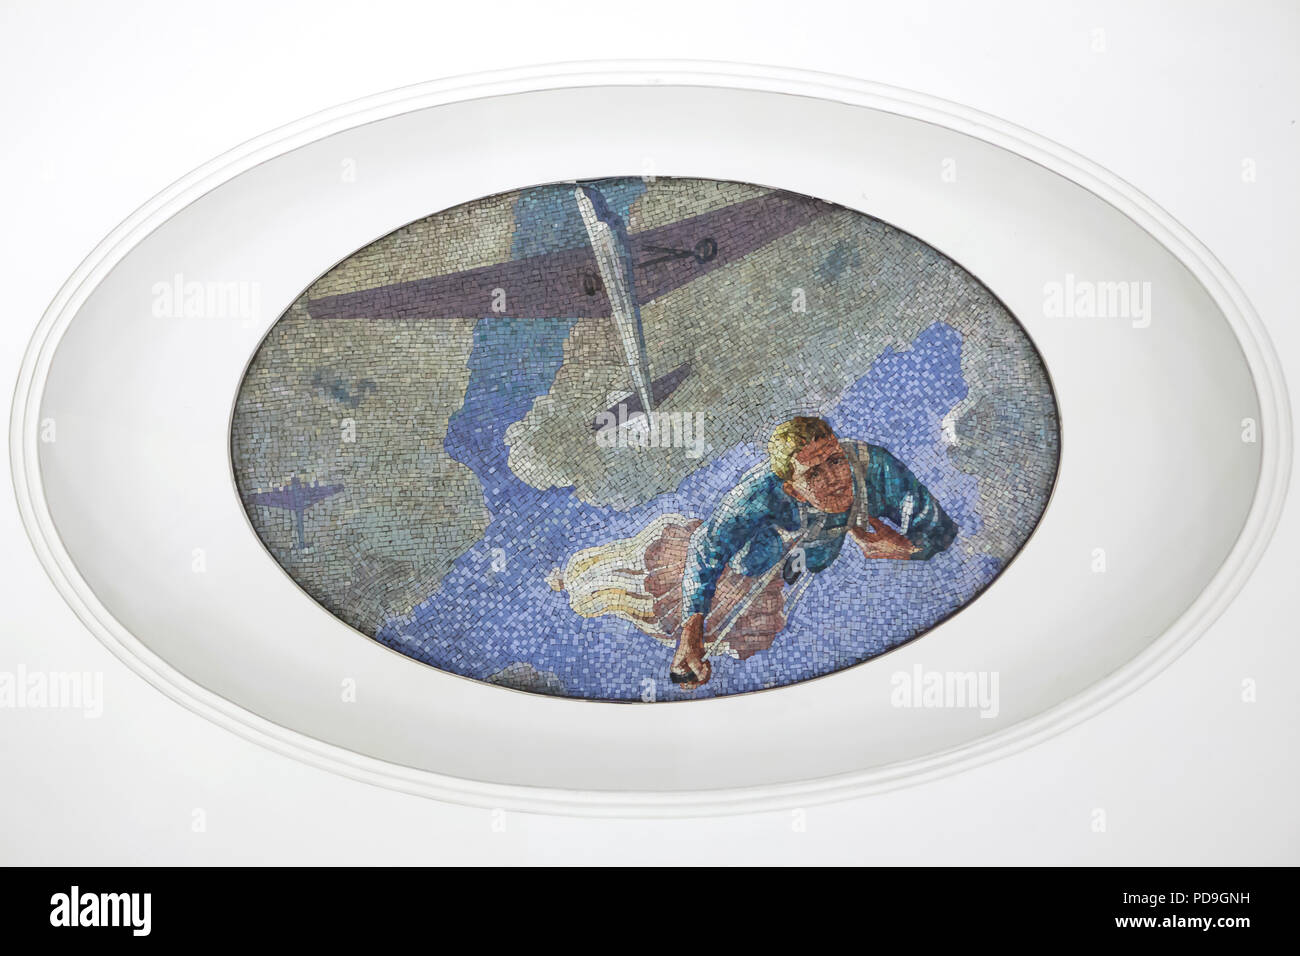 Fallschirmspringer aus den Schirm an der Decke Mosaik von sowjetischen Künstler Alexander Deyneka im U-Bahnhof Majakowskaja in Moskau, Rußland, mit dargestellt. Eines der Mosaike aus der dargelegten vierundzwanzig Stunden in den sowjetischen Luftraum von Russischen Mosaik master Vladimir Frolov im Jahre 1930 montiert. Stockfoto